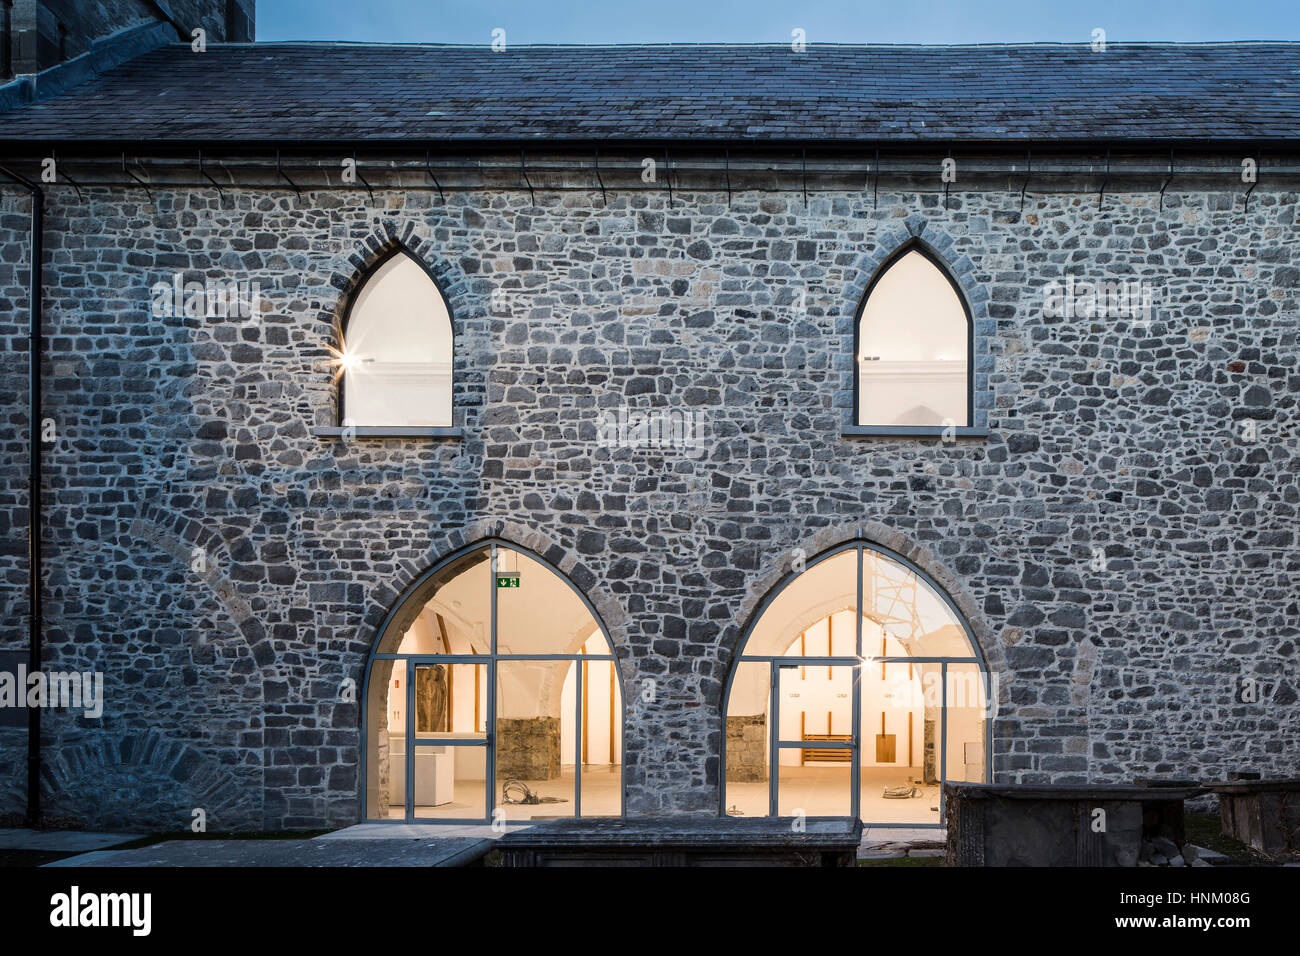 Dettaglio del volume originale al crepuscolo. St Mary Hall Kilkenny, Kilkenny, Irlanda. Architetto: McCullough Mulvin Architects, 2016. Foto Stock